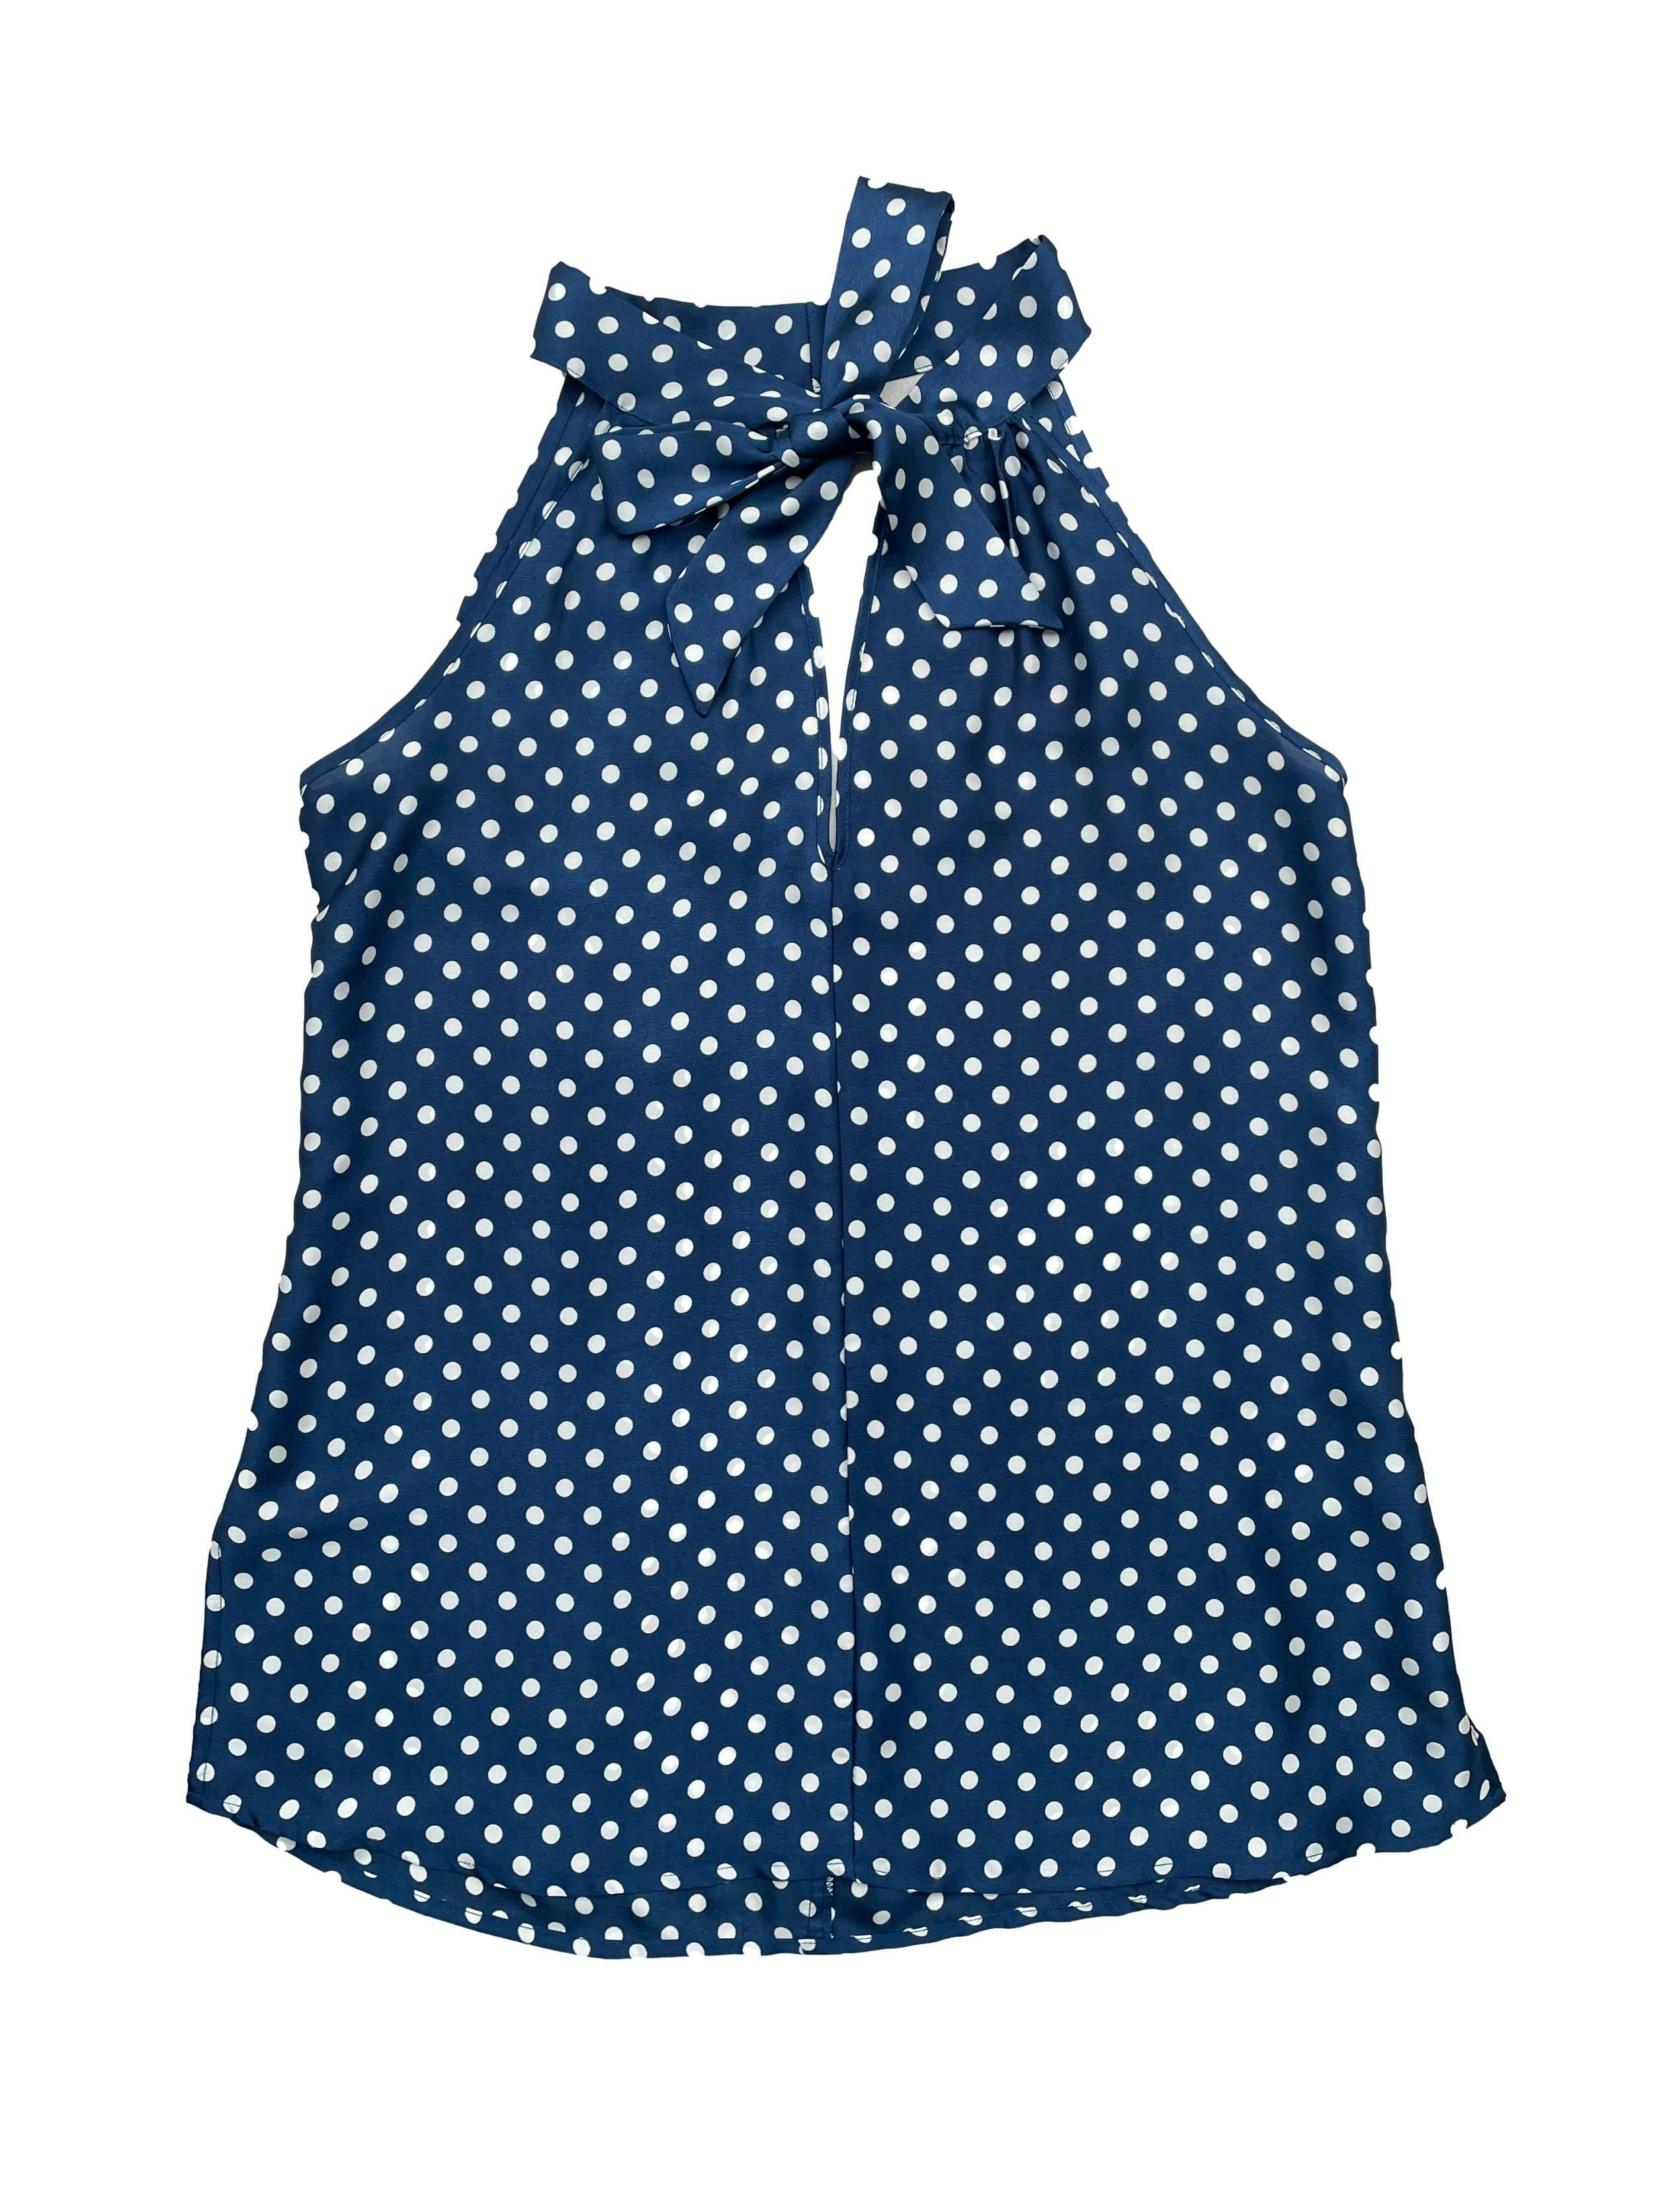 Blusa Michelle Belau azul con polka dots blancos,cuello halter con lazo, escote en V frontal y posterior, aberturas laterales. Busto 92cm, Largo 68cm.